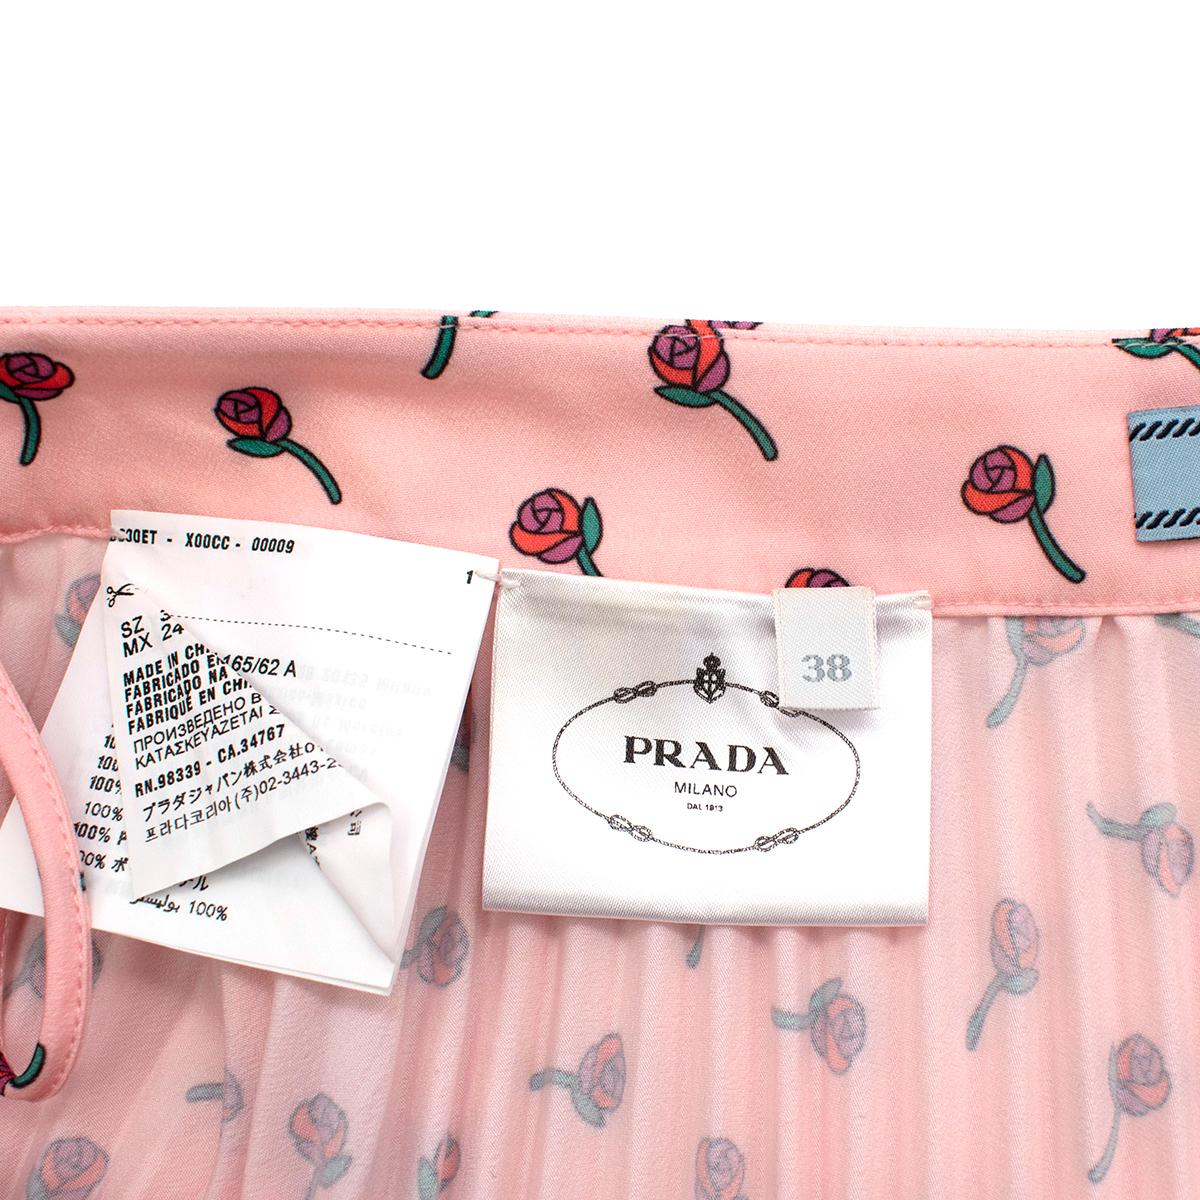 printed pleated skirt